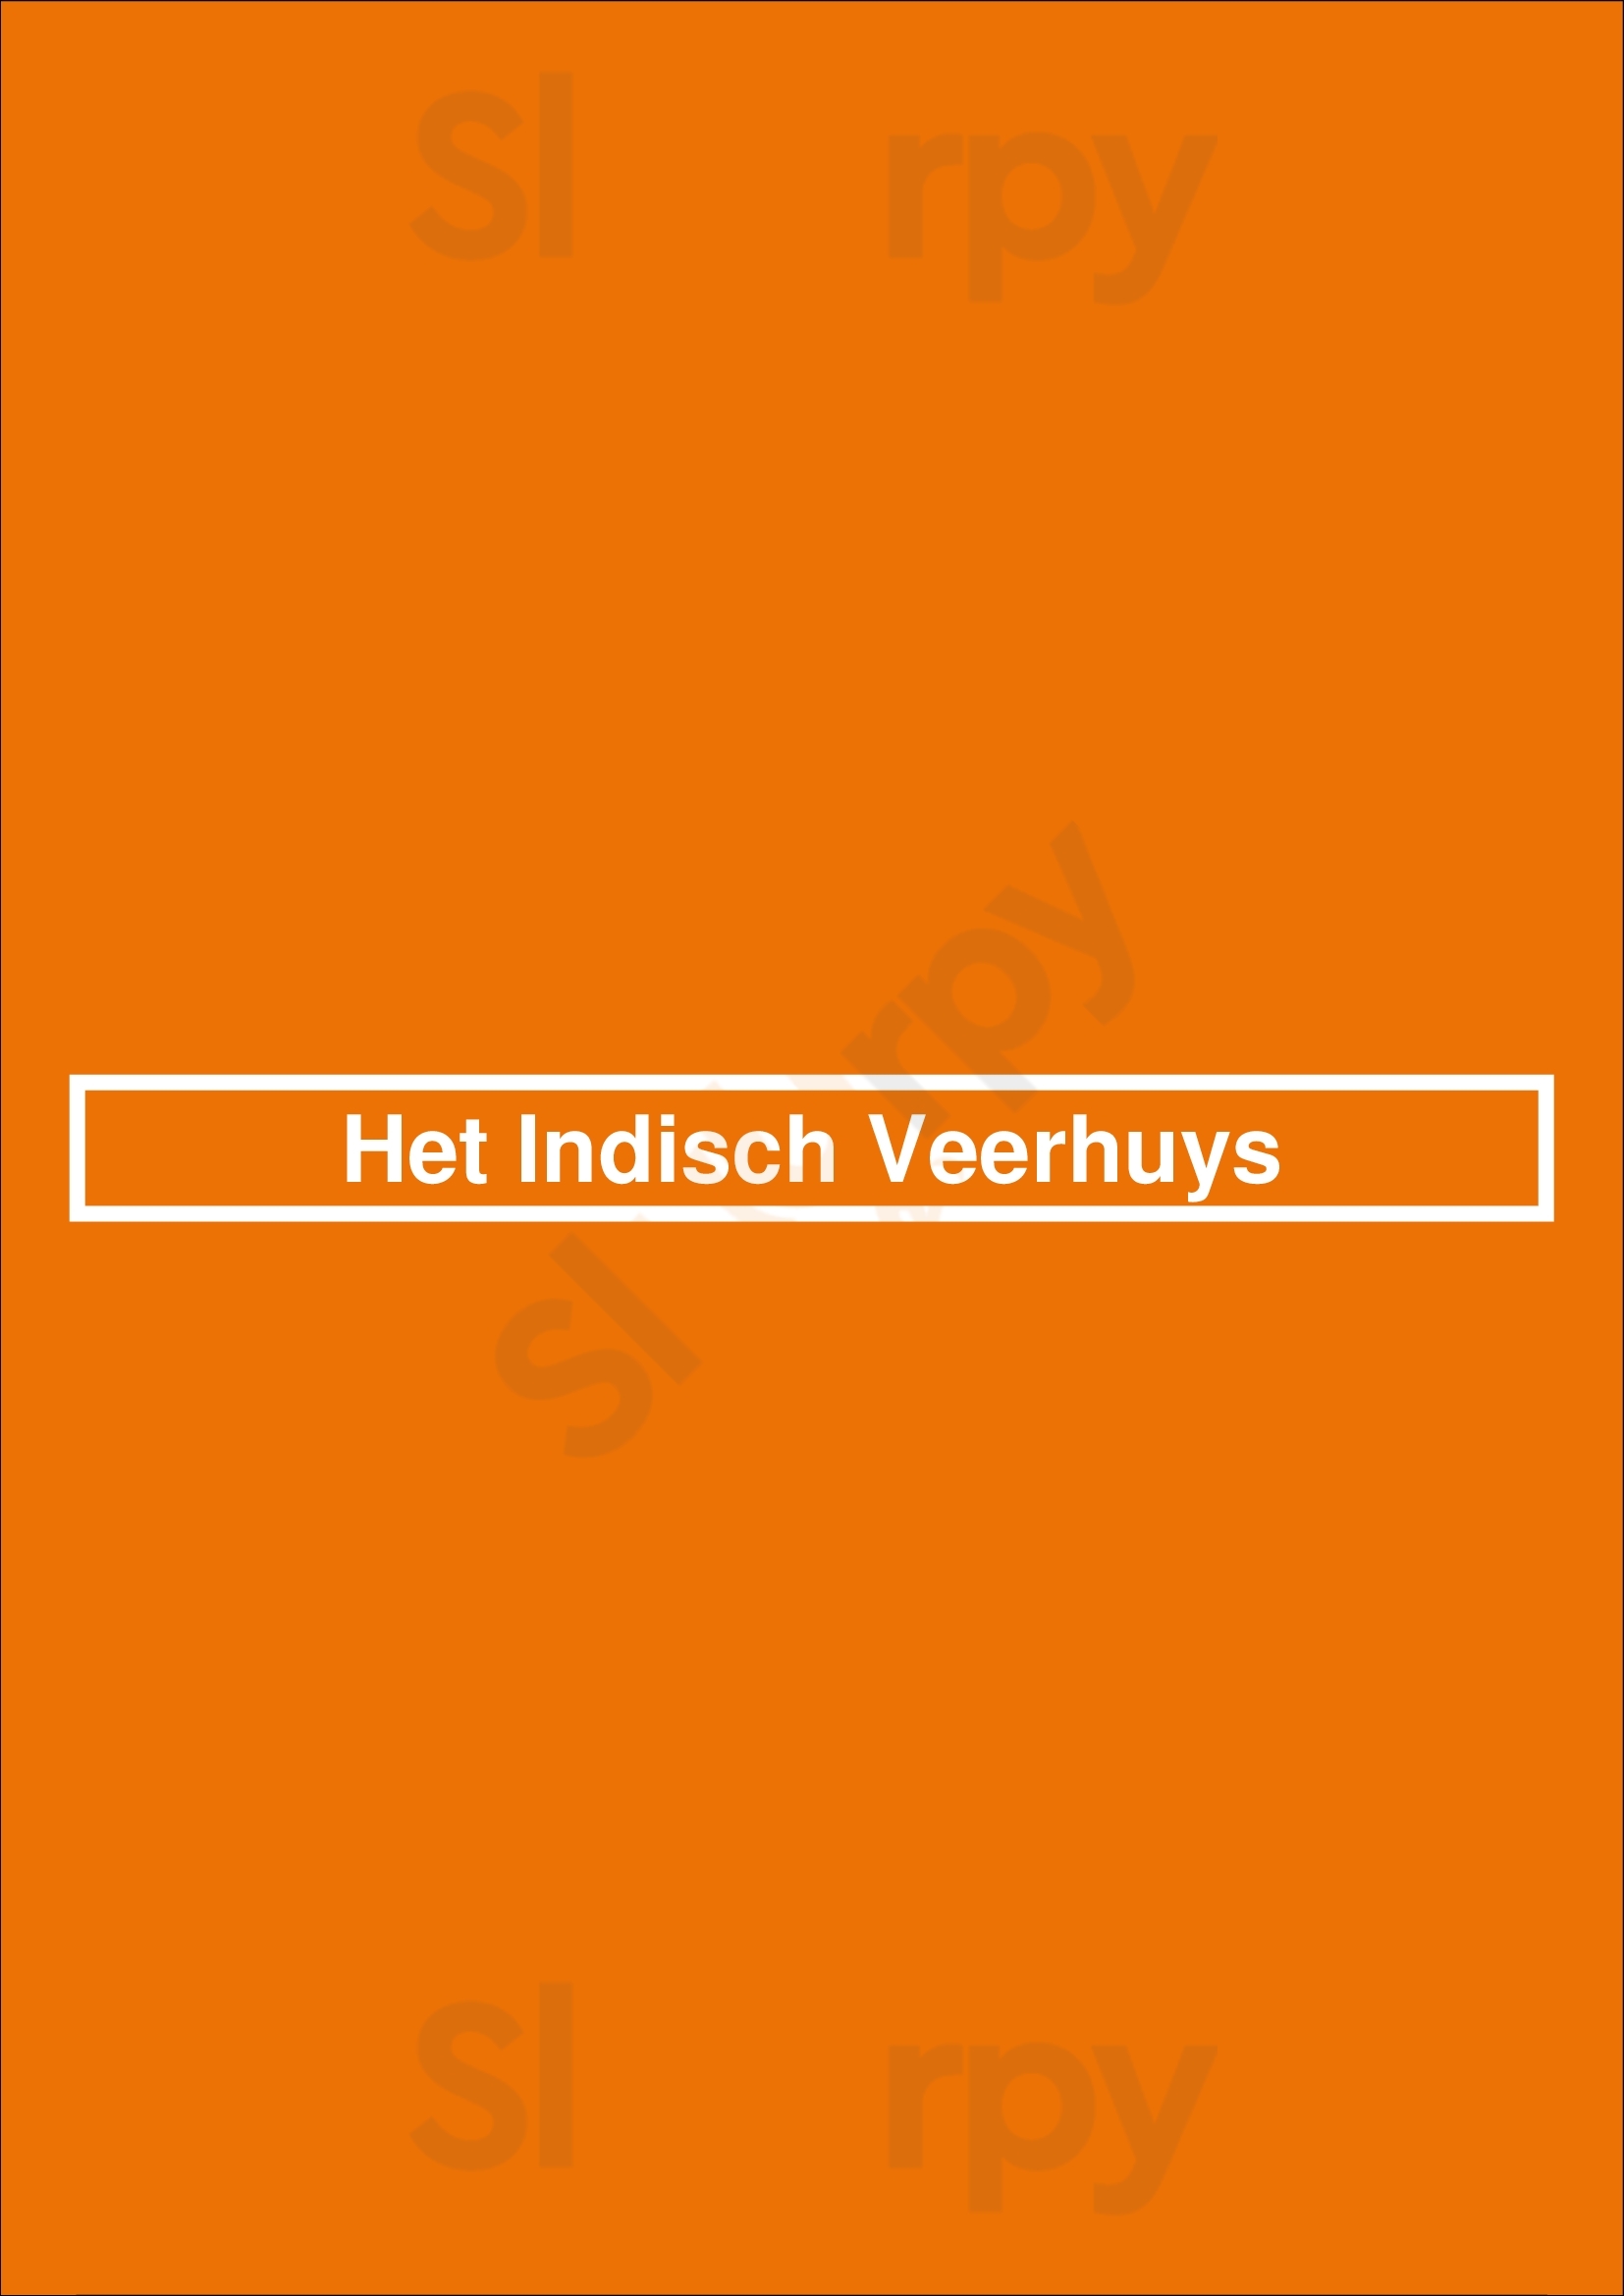 Het Indisch Veerhuys Almere Menu - 1